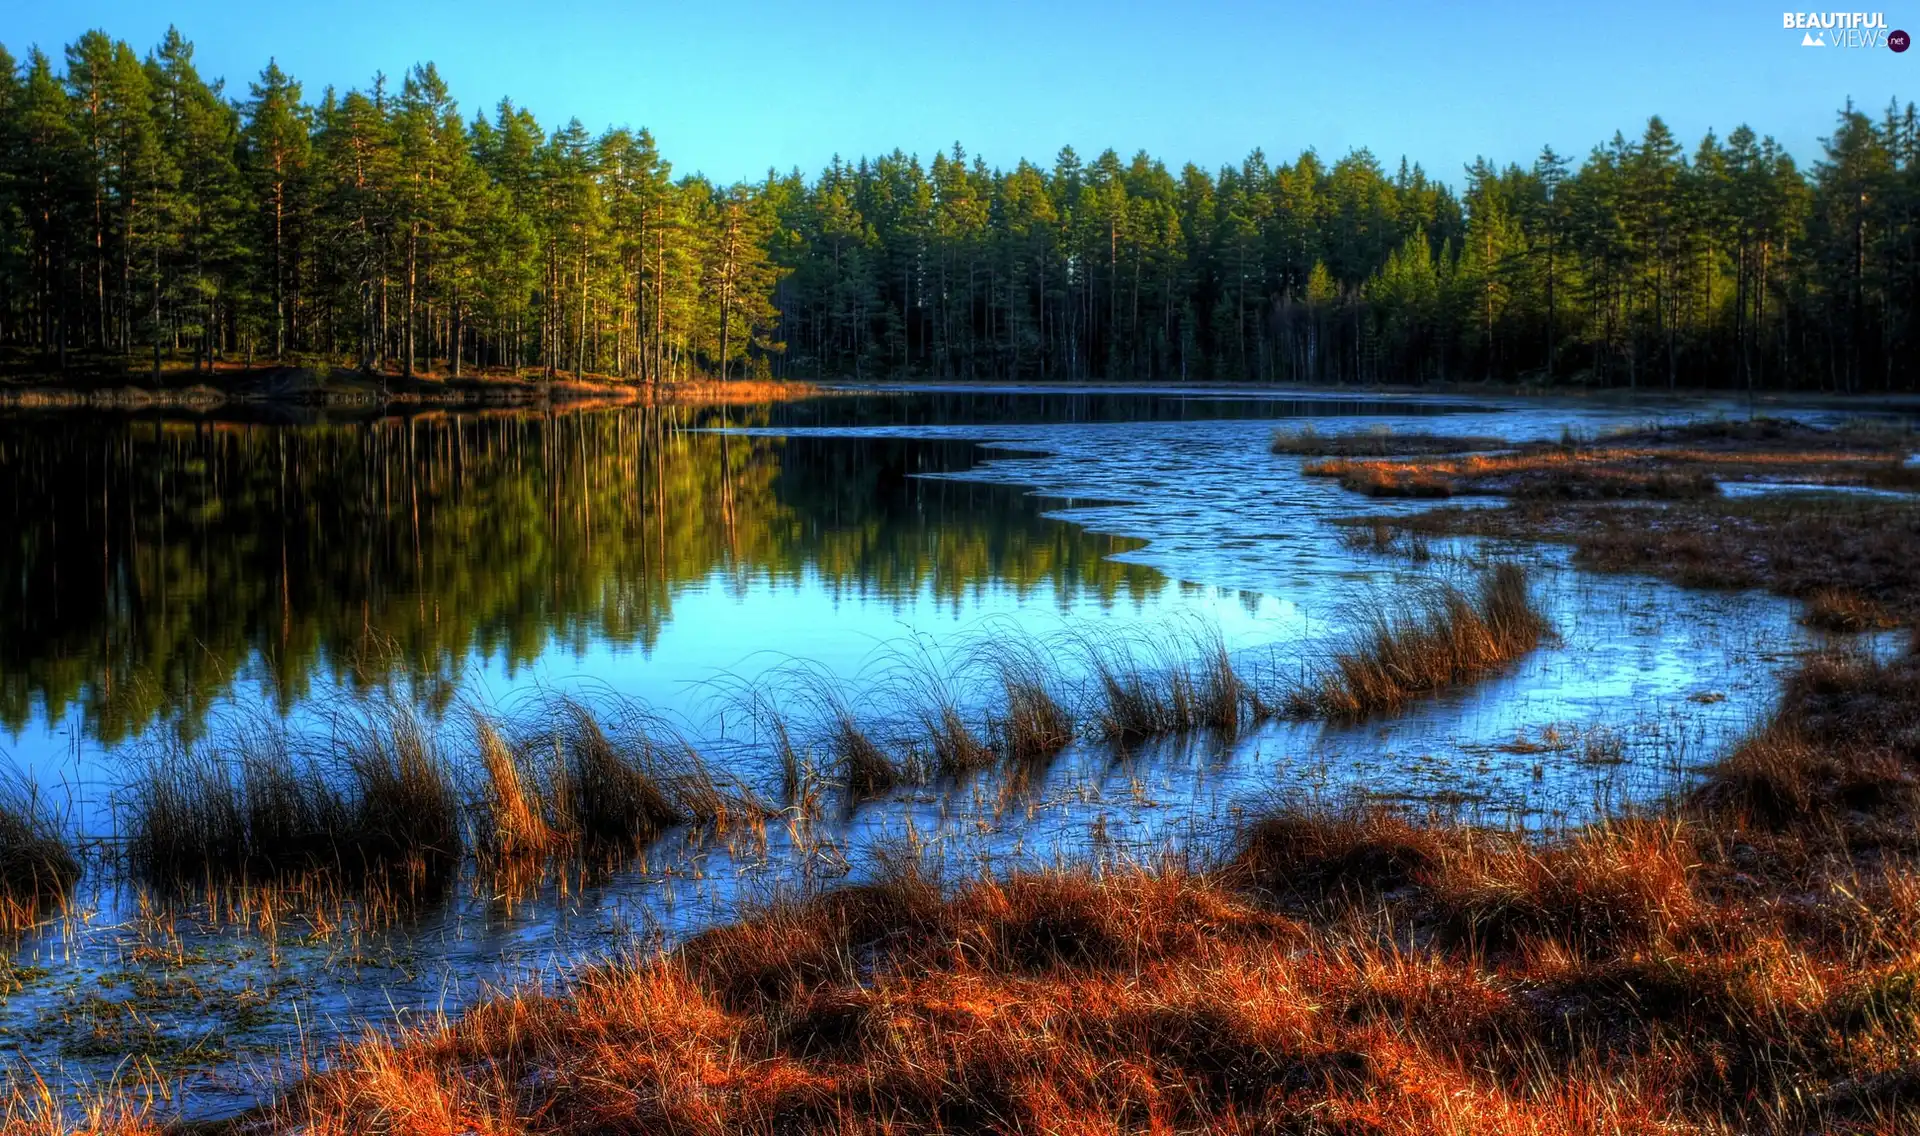 River, grass, autumn, forest